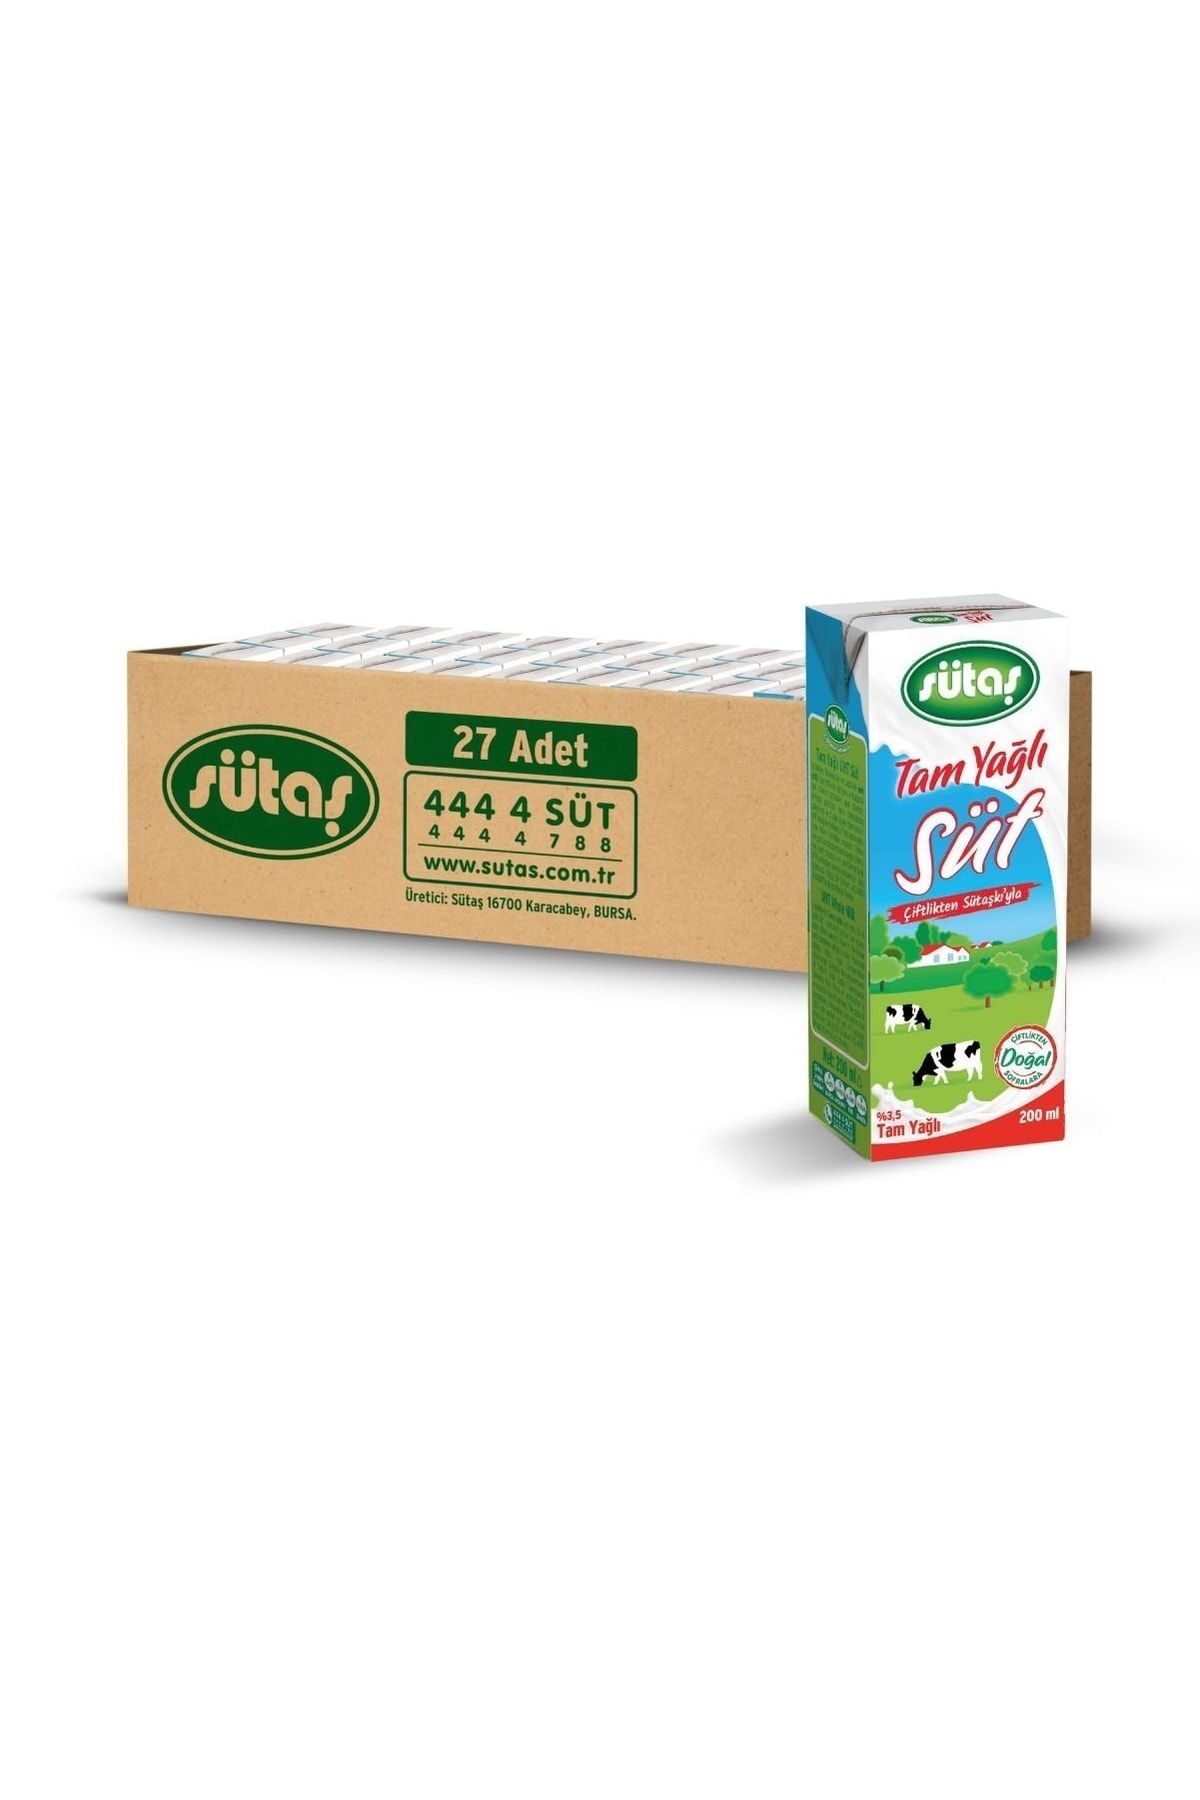 Sütaş Tam Yağlı Süt 200 Ml (27 Adet)